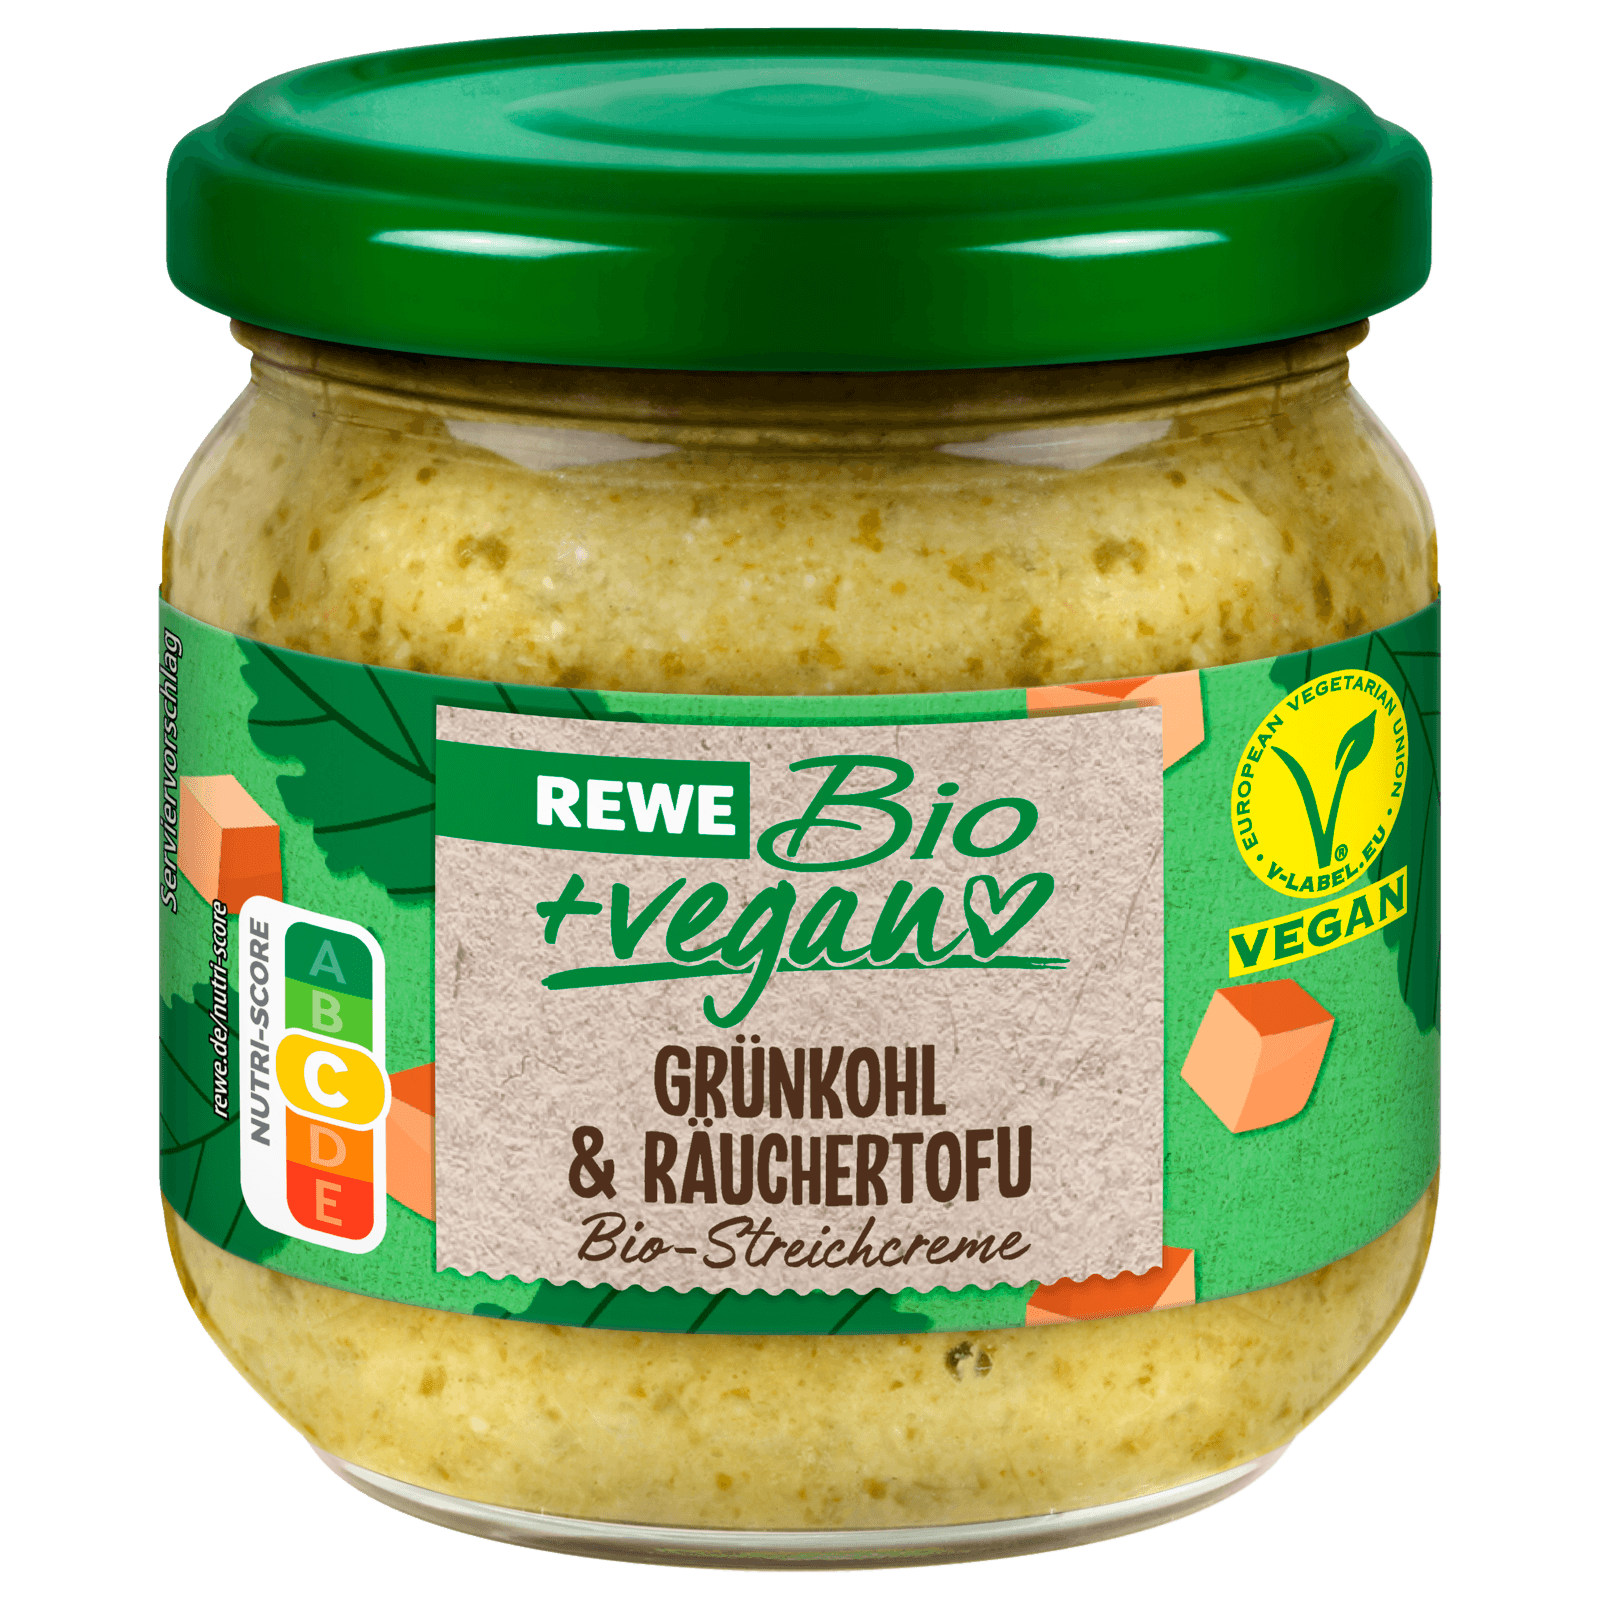 REWE Bio + vegan Streichreme Grünkohl & Räuchertofu 180g